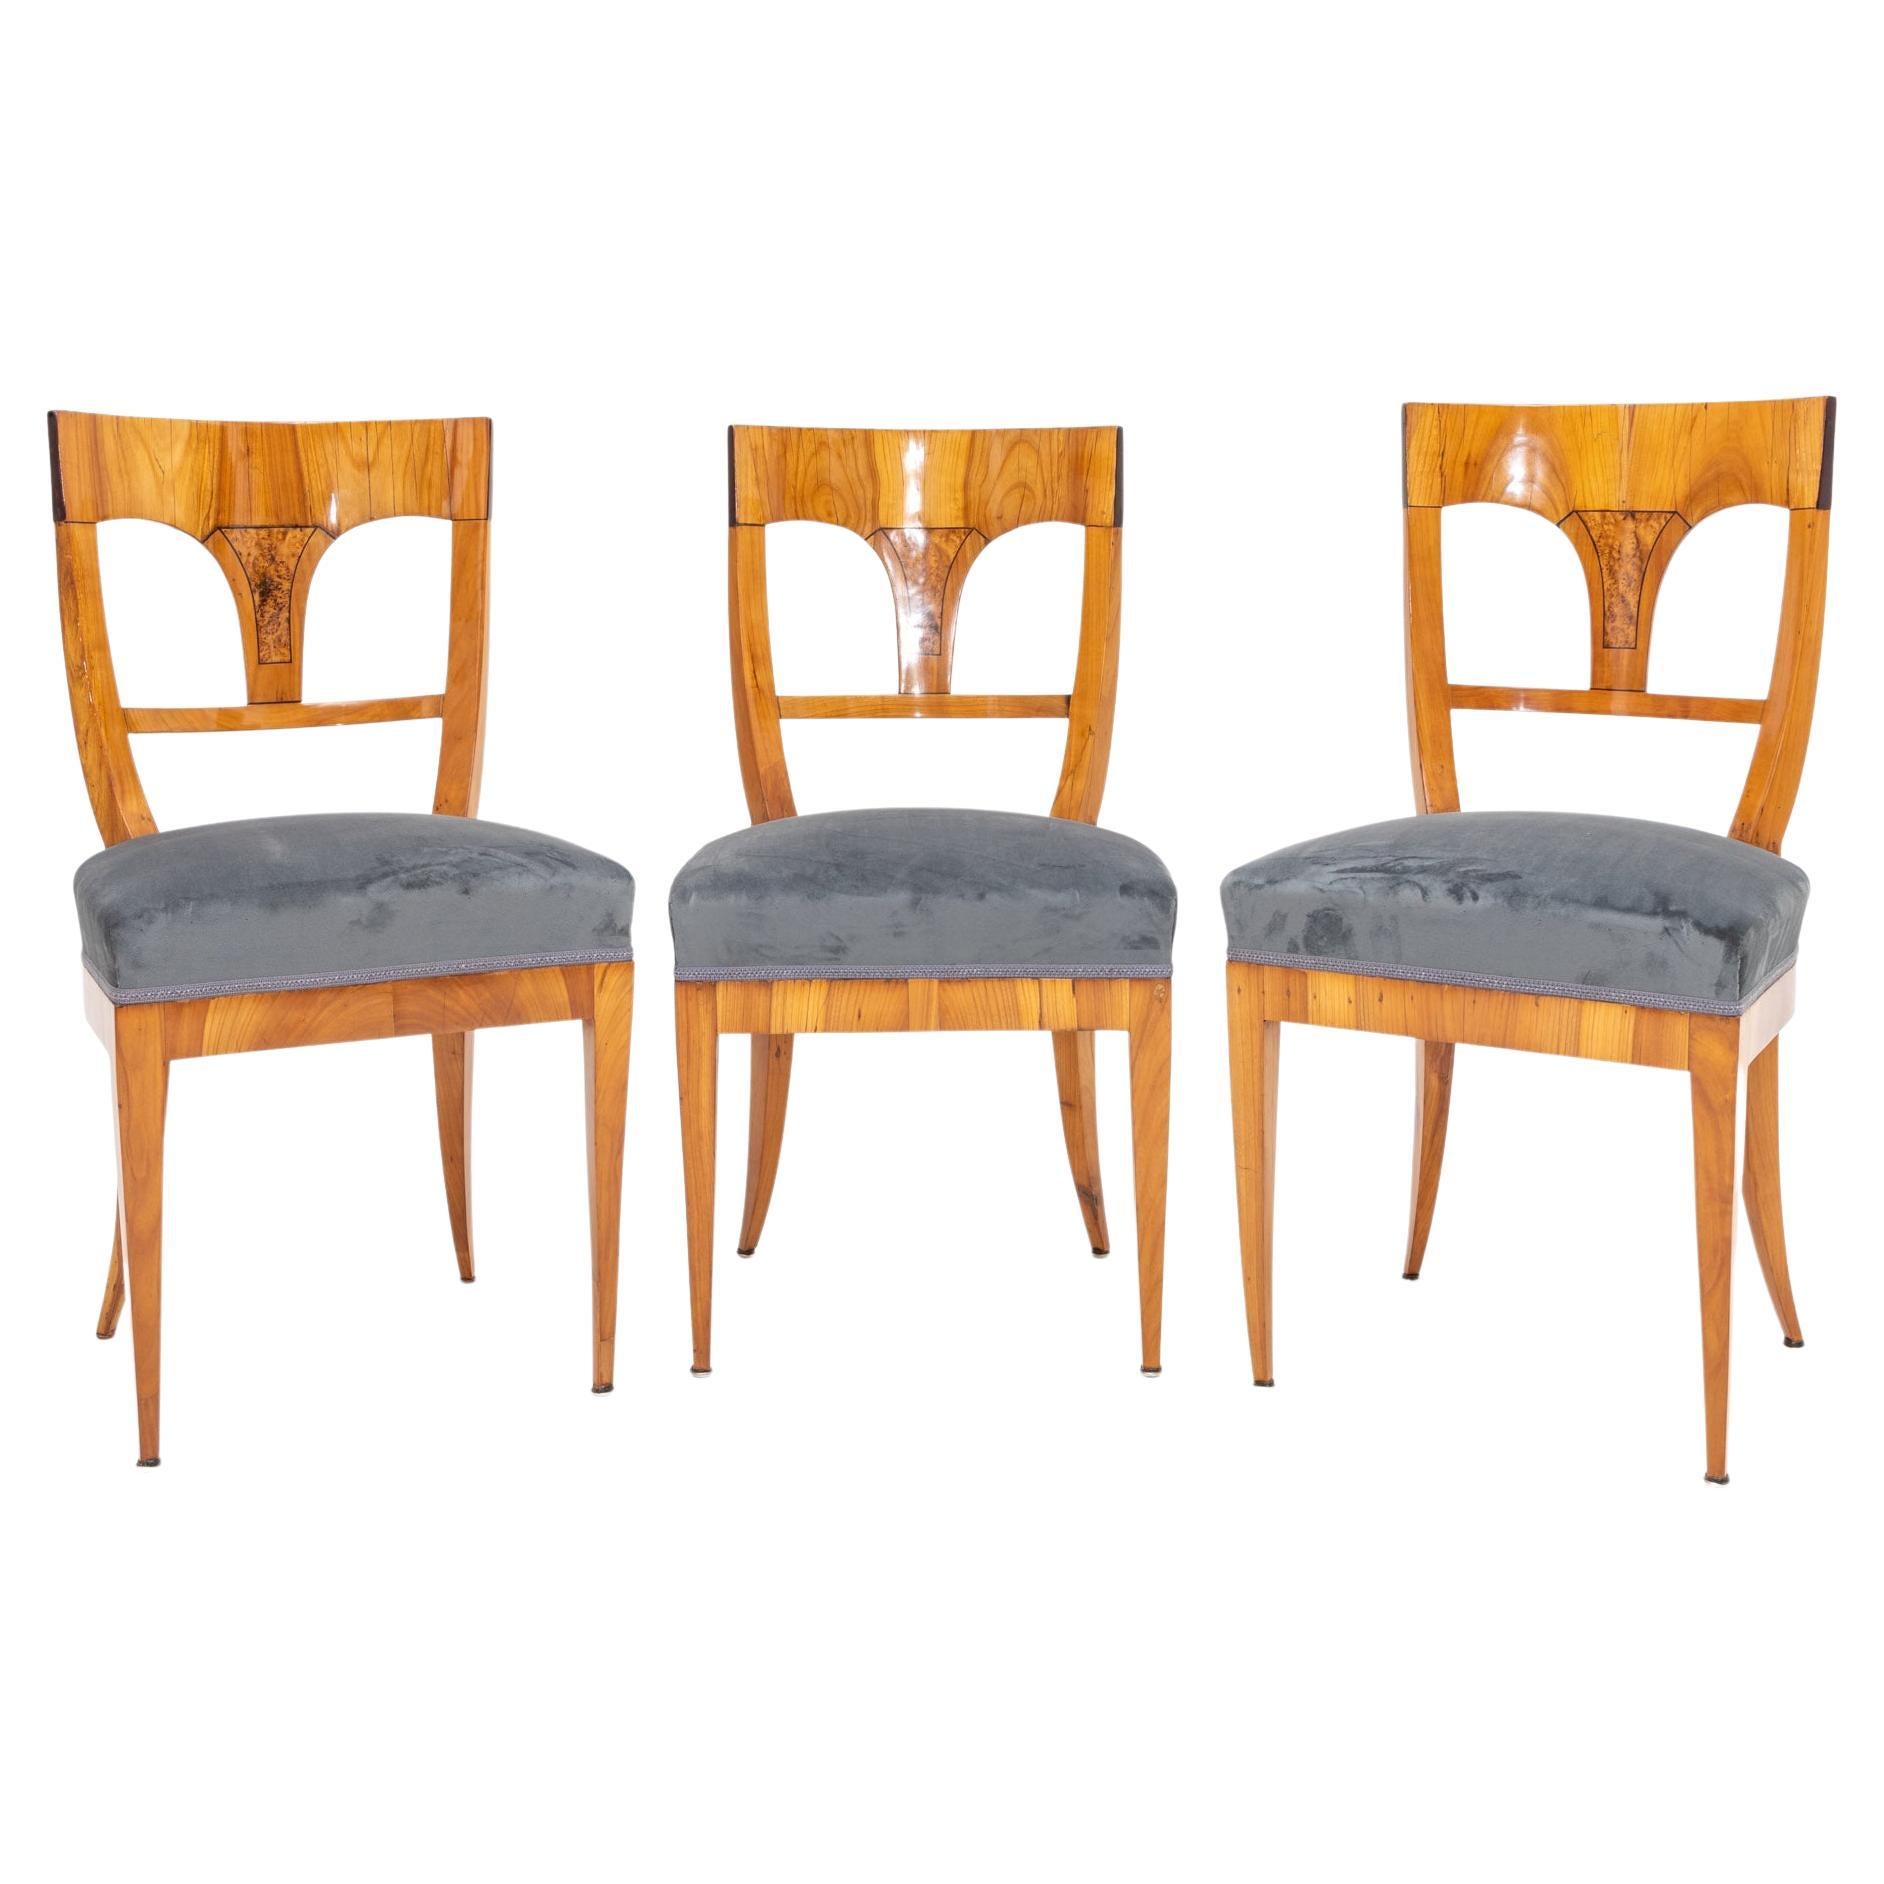 Biedermeier Chairs, circa 1820